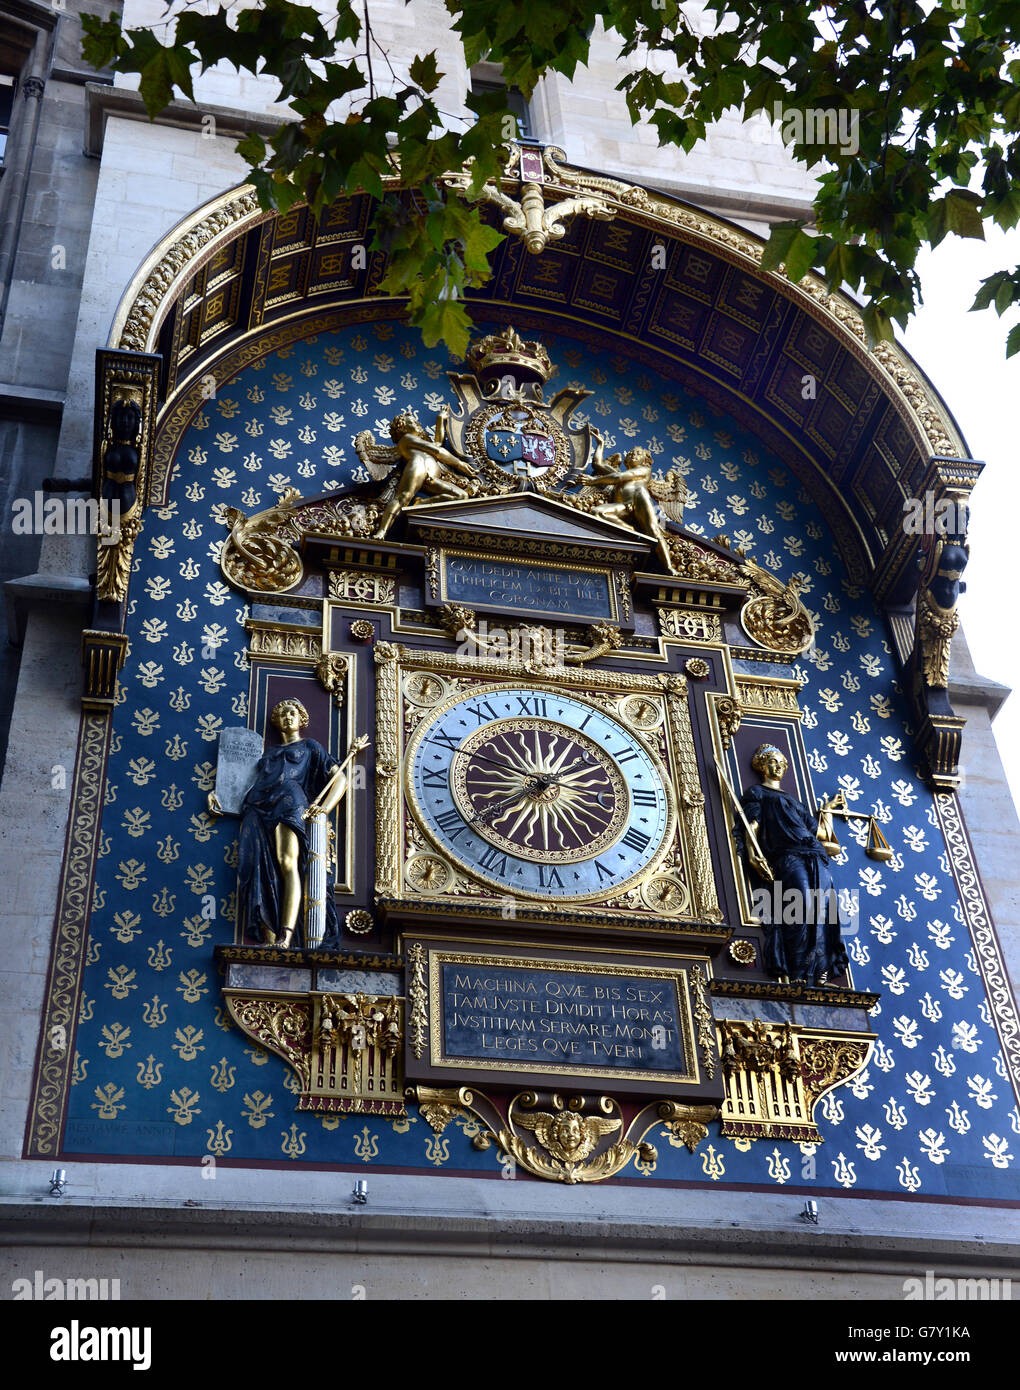 The oldest clock in Paris, built in 1370, at the Tour d'Horloge des Palais' de la Cite, in Paris, France, 10 September 2013. PHOTO: WALTRAUD GRUBITZSCH  - NO WIRE SERVICE - Stock Photo